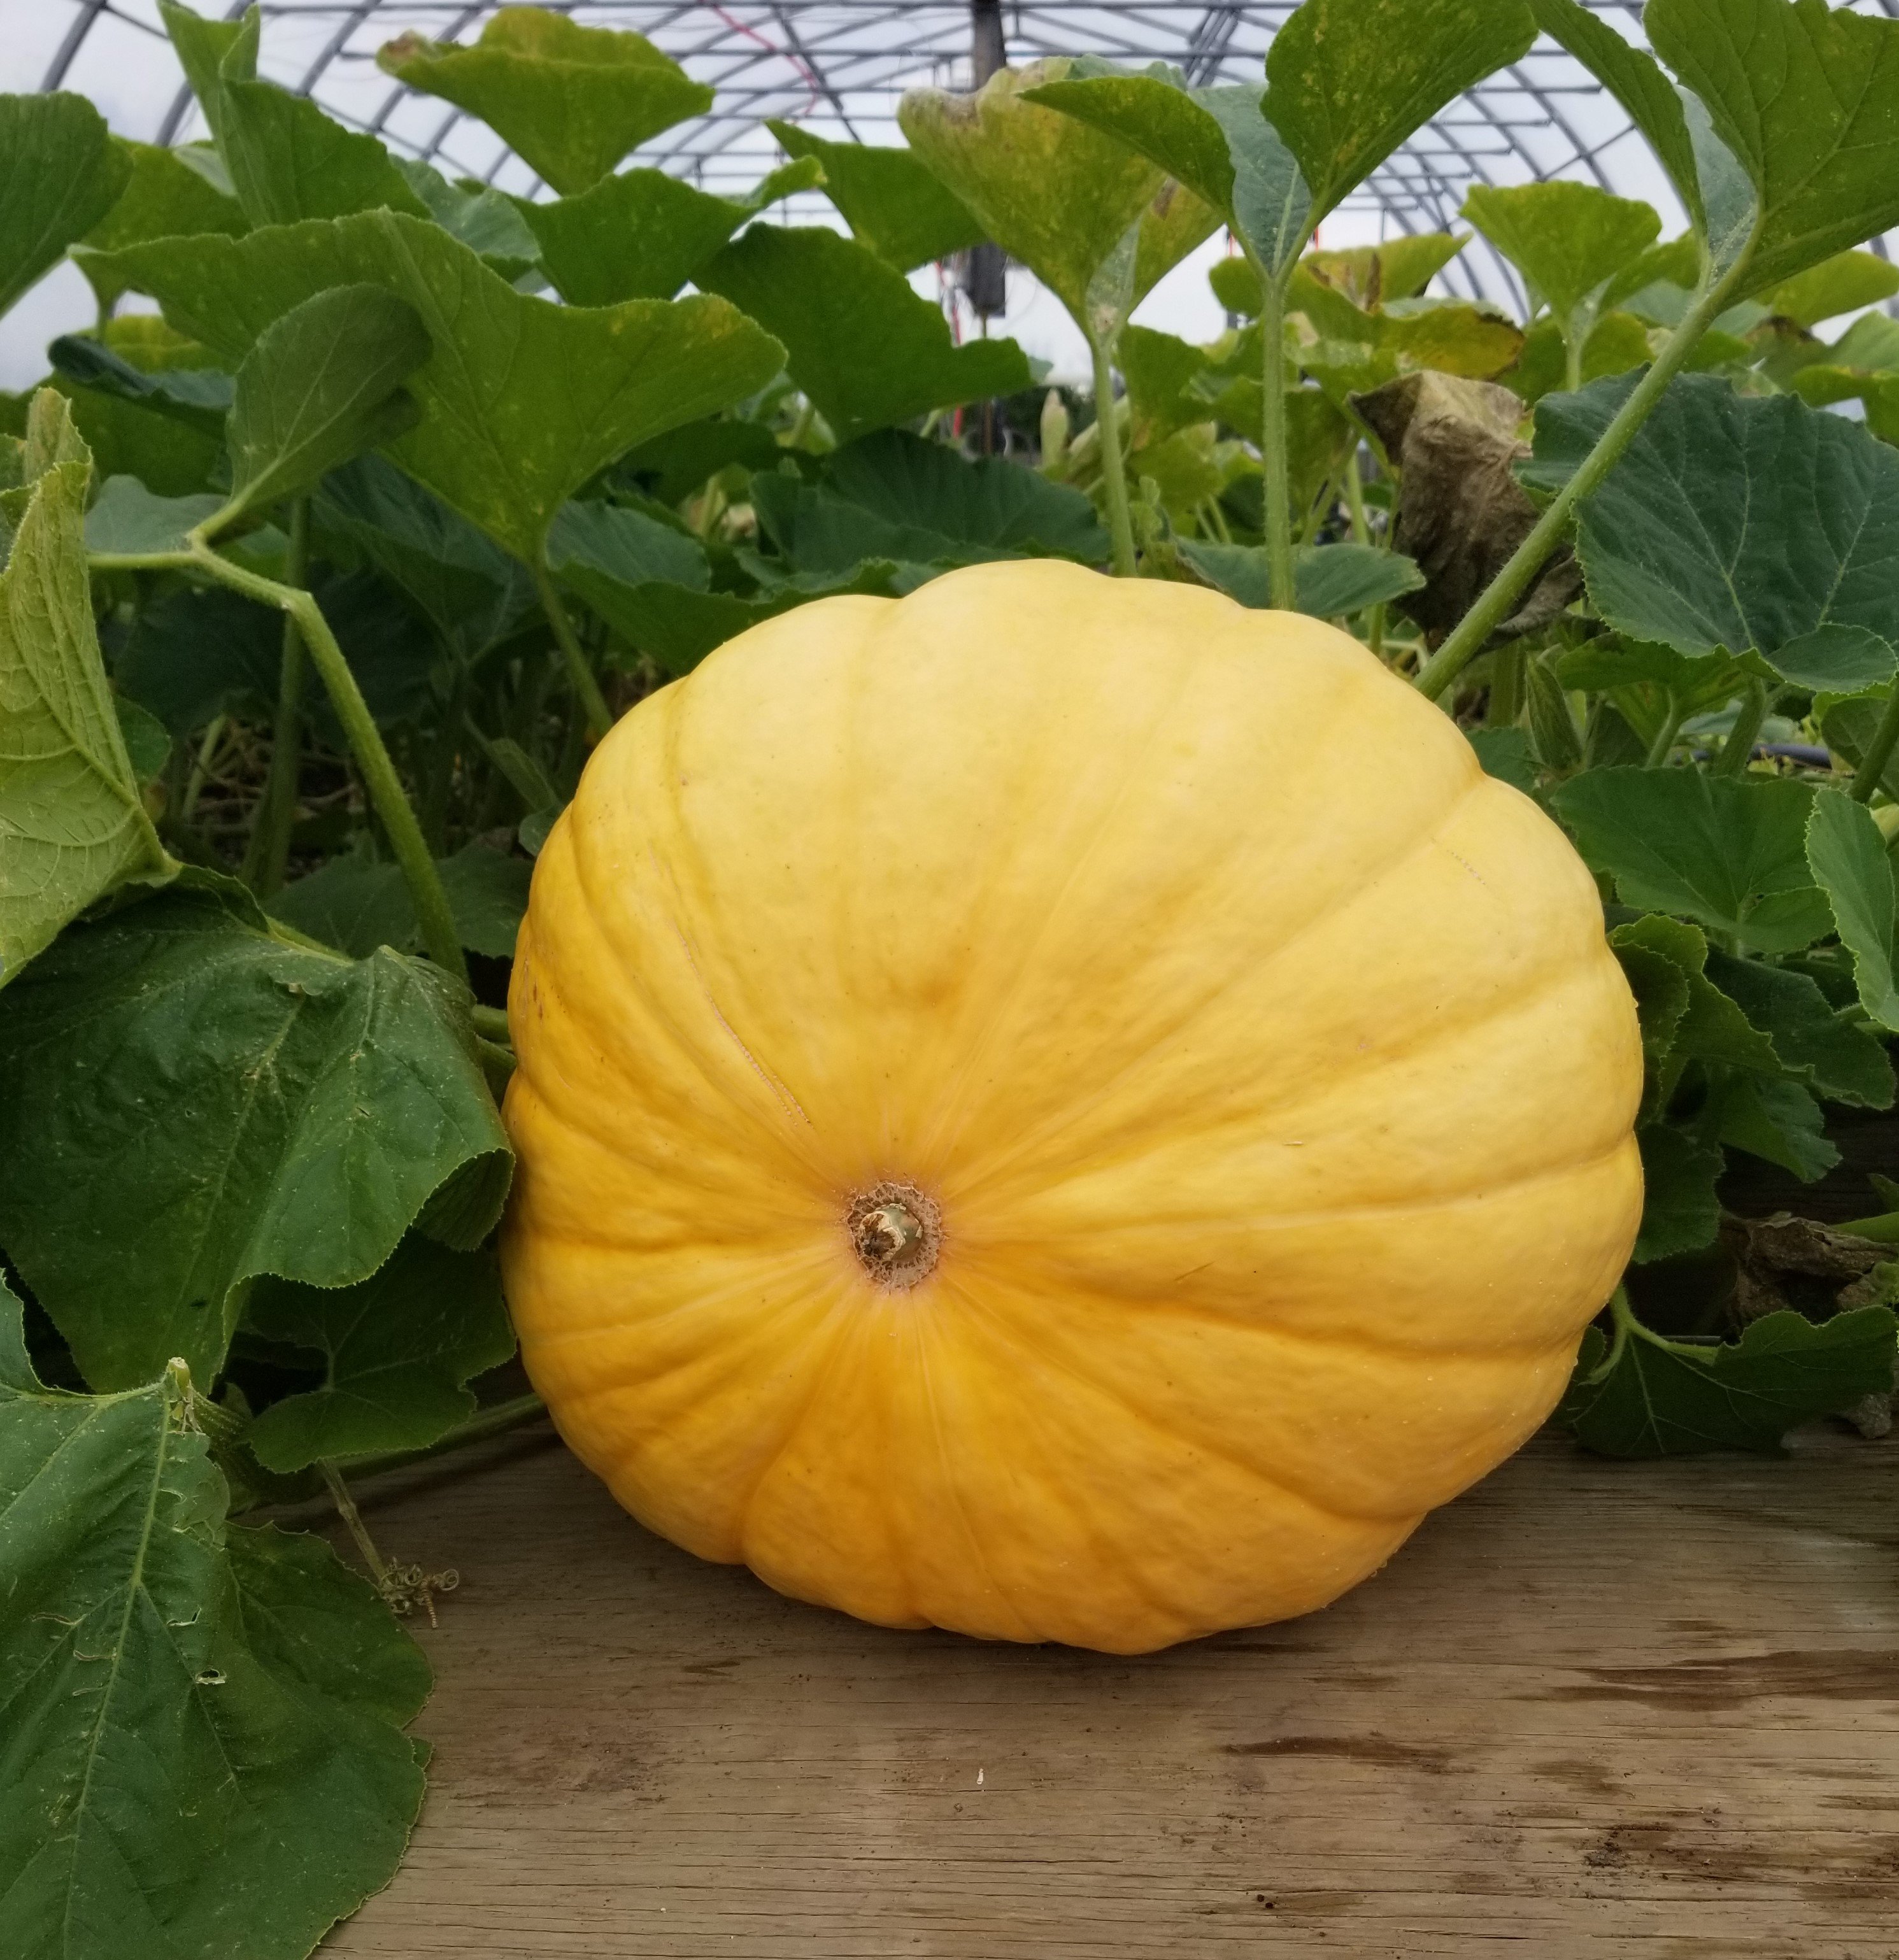 Previous Happening: Large Pumpkin!